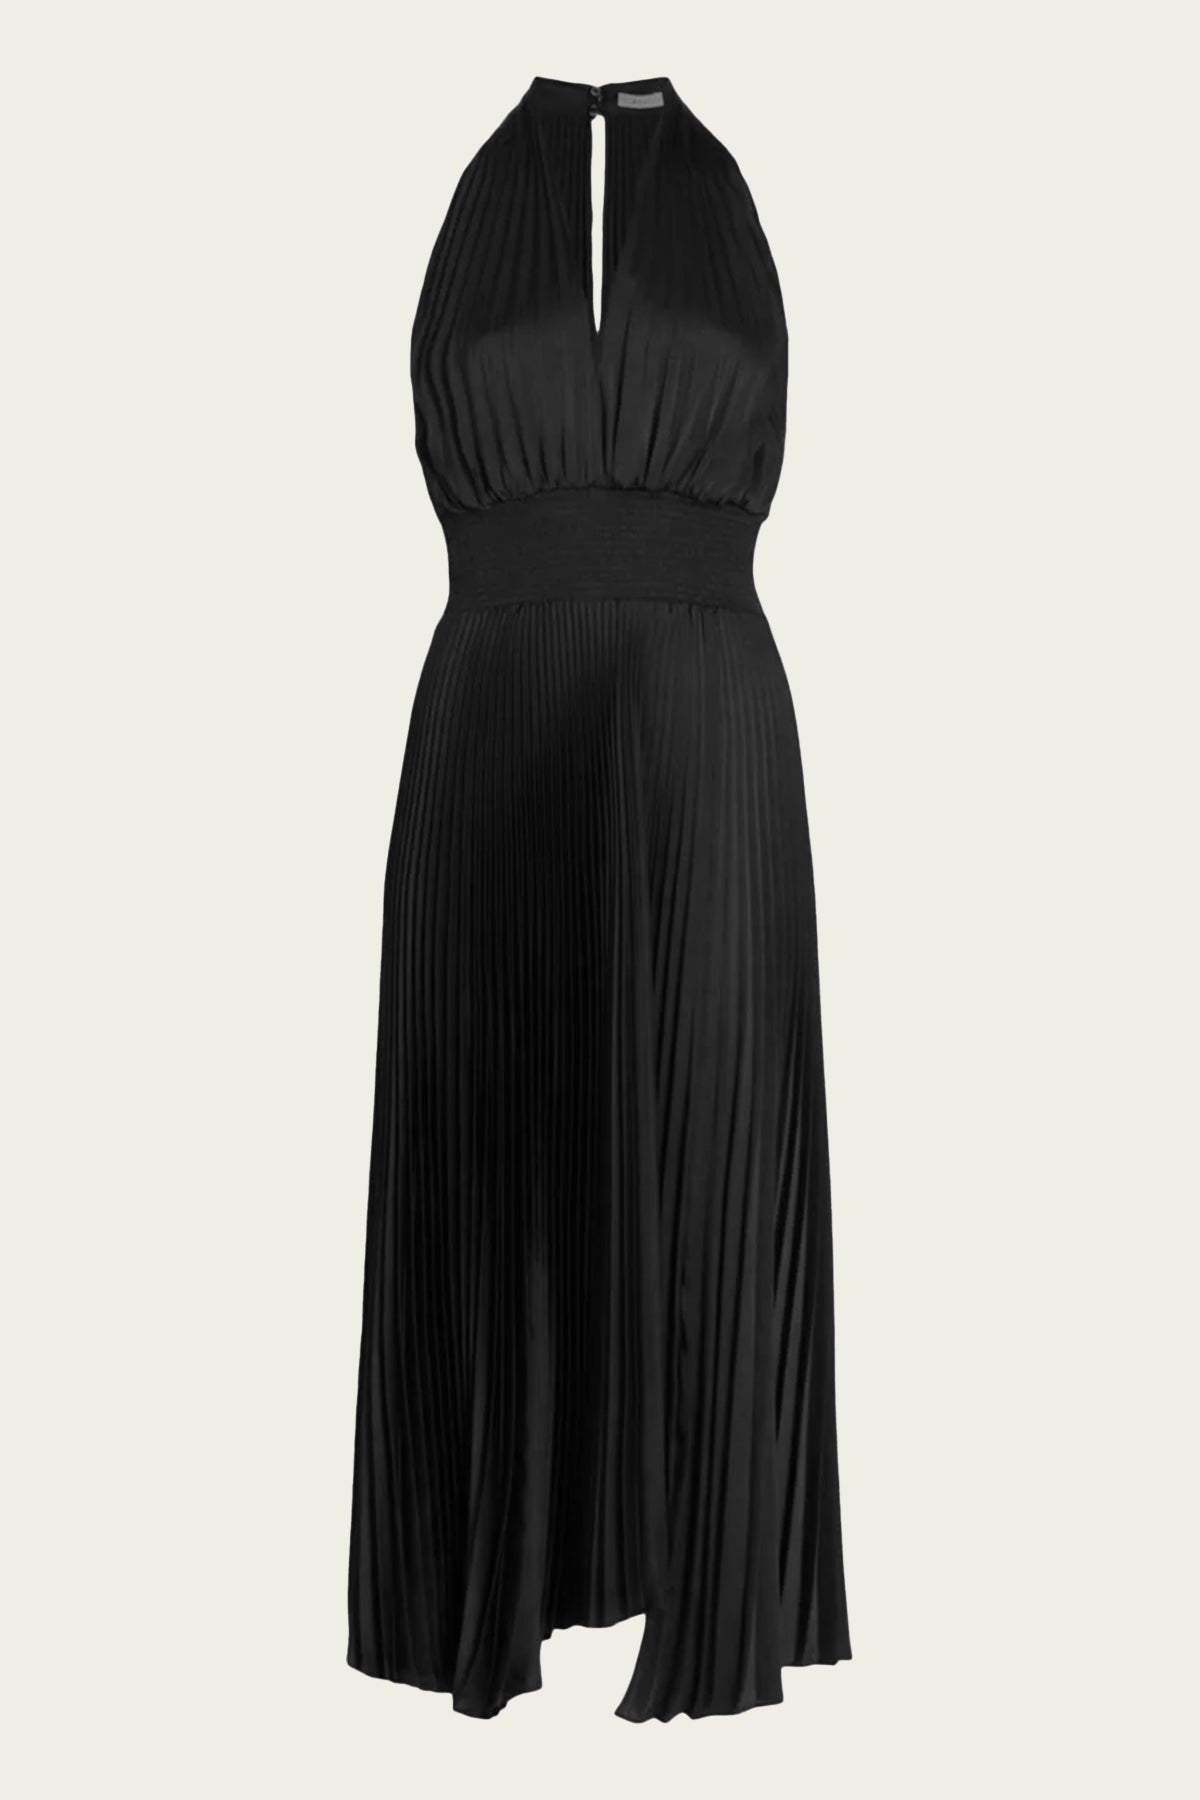 Satina Black Shirt Dress